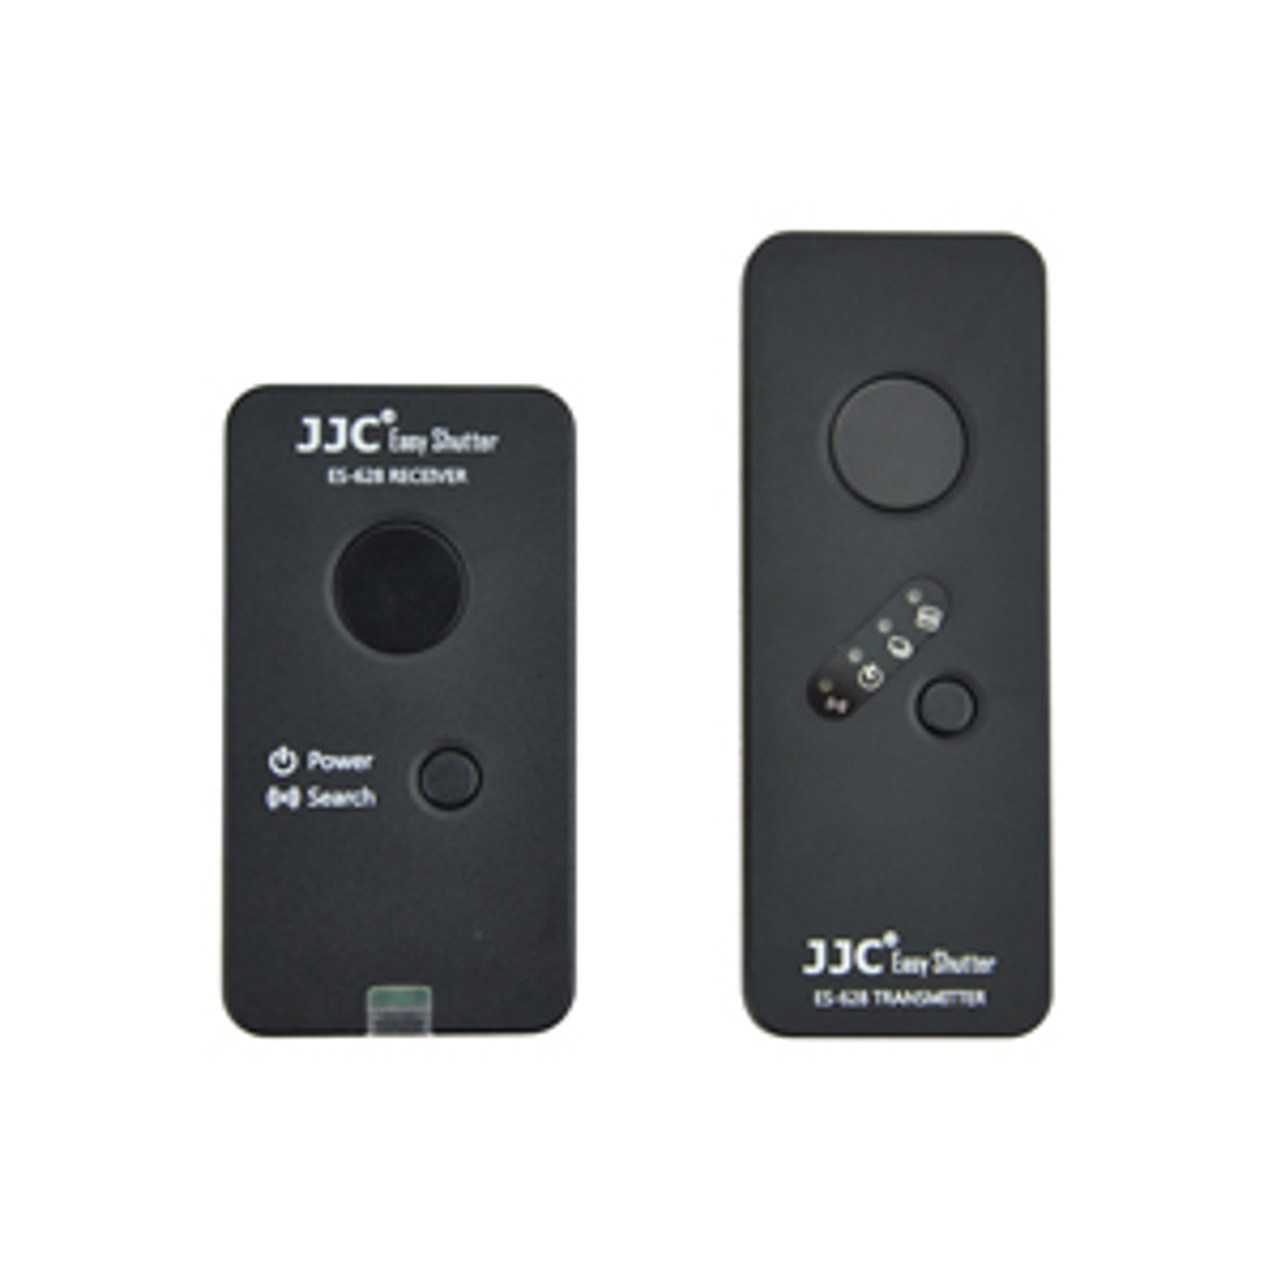 JJC ES-628O2 Wireless Remote replacing Olympus RM-UC1